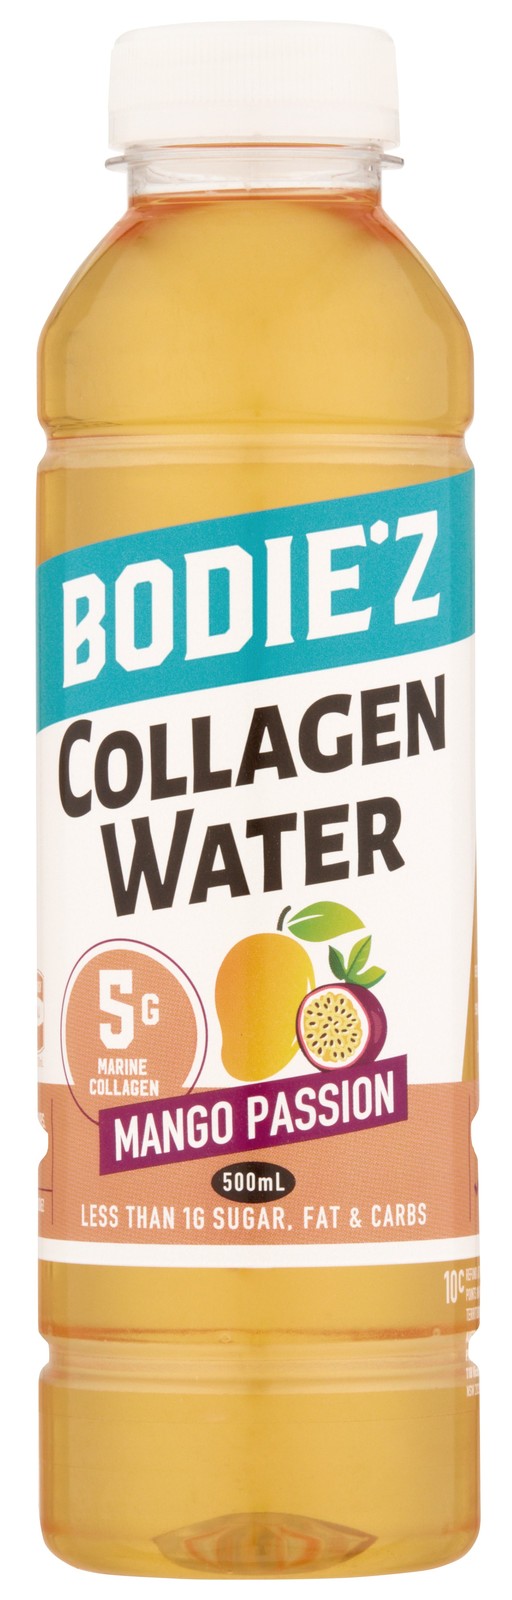 Bodie'z Collagen Mango (5g) 500ml (6/pk)